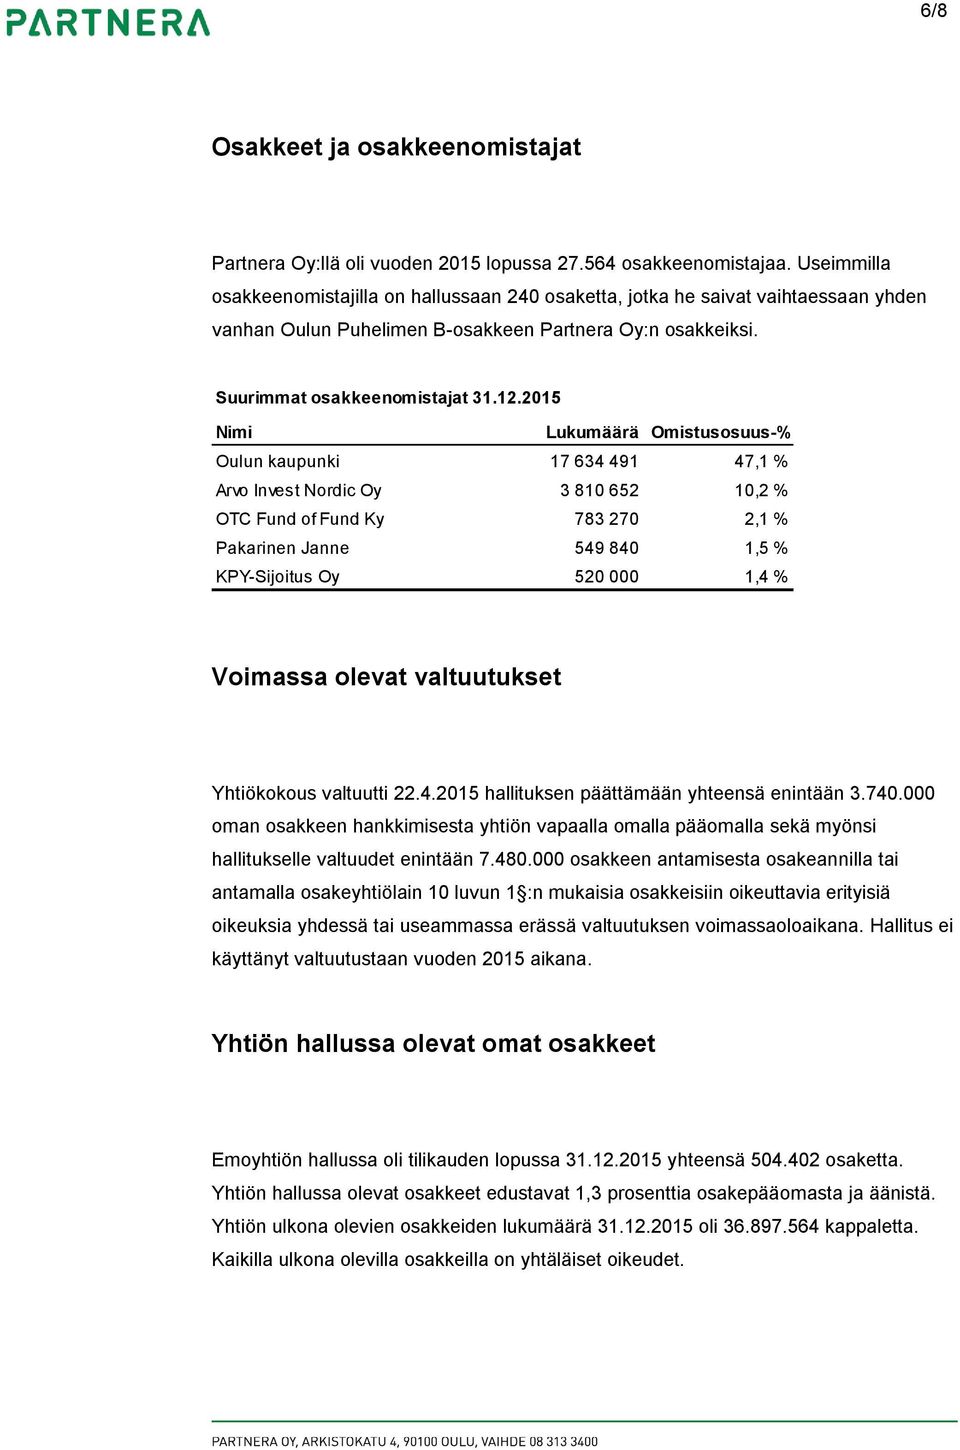 2015 Nimi Lukumäärä Omistusosuus-% Oulun kaupunki 17 634 491 47,1 % Arvo Invest Nordic Oy 3 810 652 10,2 % OTC Fund of Fund Ky 783 270 2,1 % Pakarinen Janne 549 840 1,5 % KPY-Sijoitus Oy 520 000 1,4